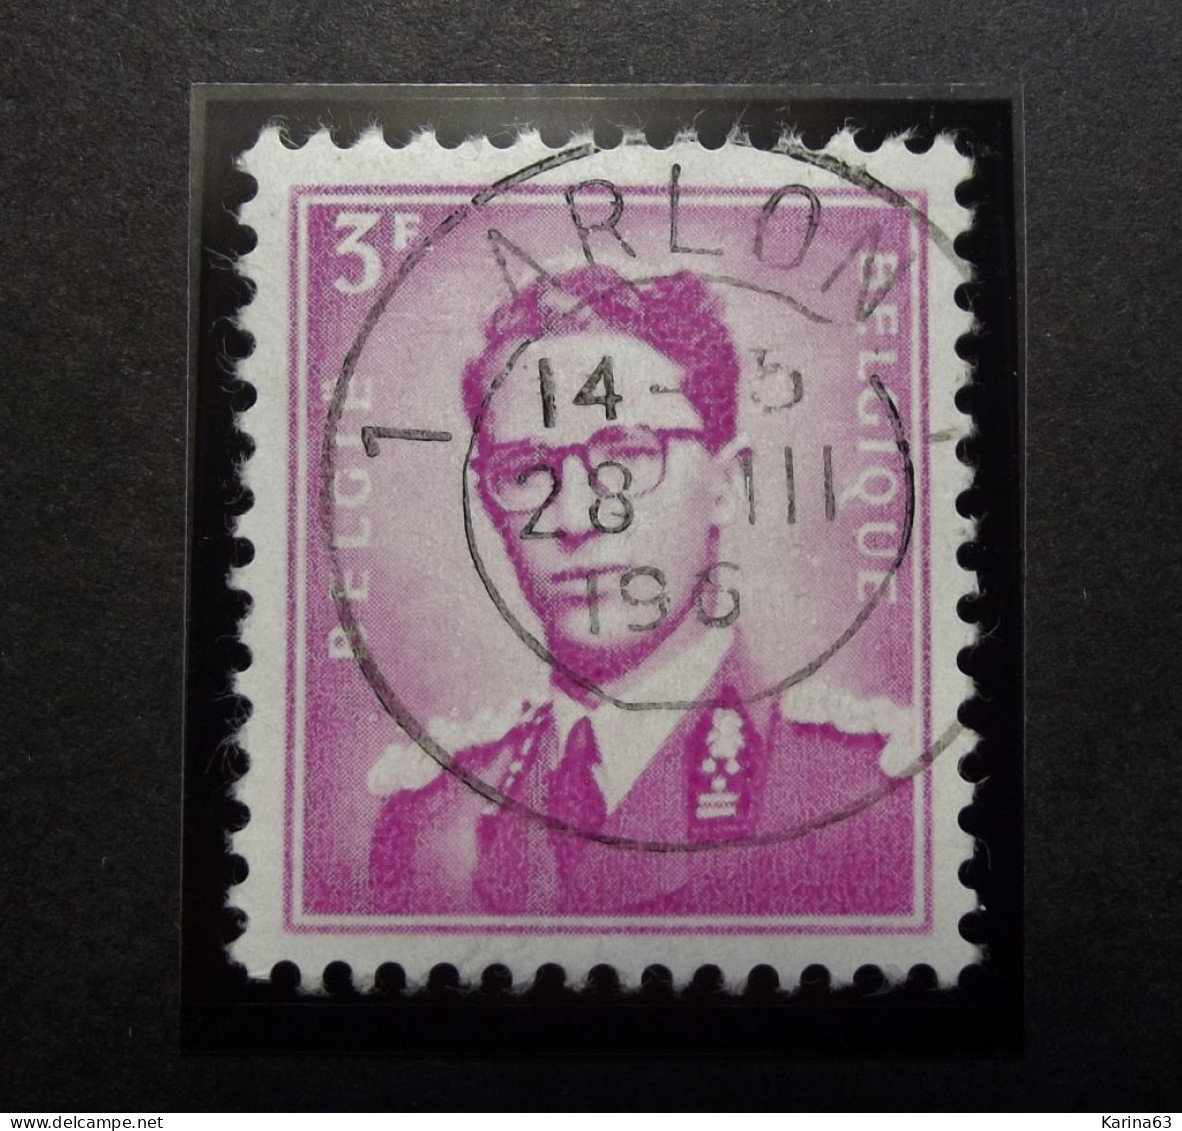 Belgie Belgique - 1958 -  OPB/COB  N° 1067 - 3 F  - Obl. Central ARLON - Used Stamps